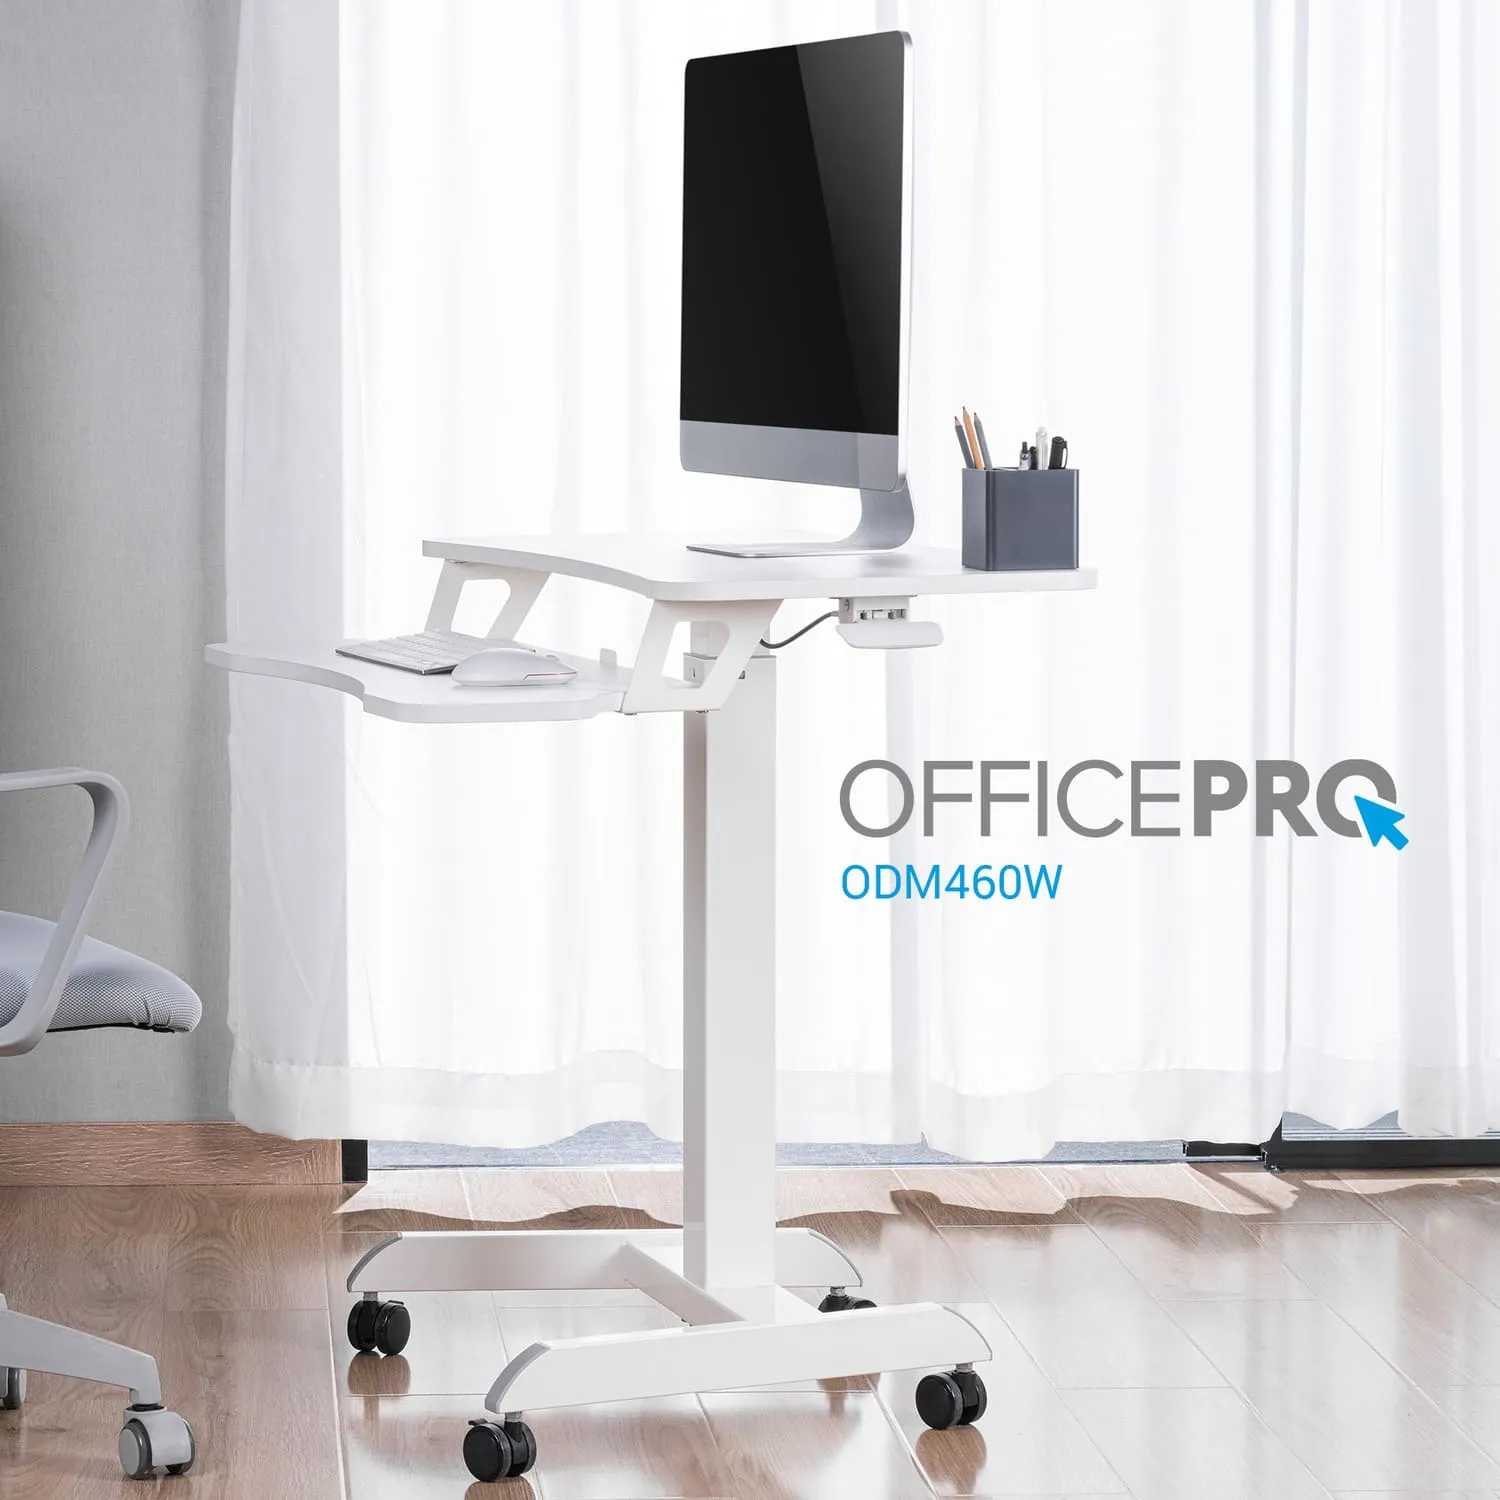 OfficePro ODM460W